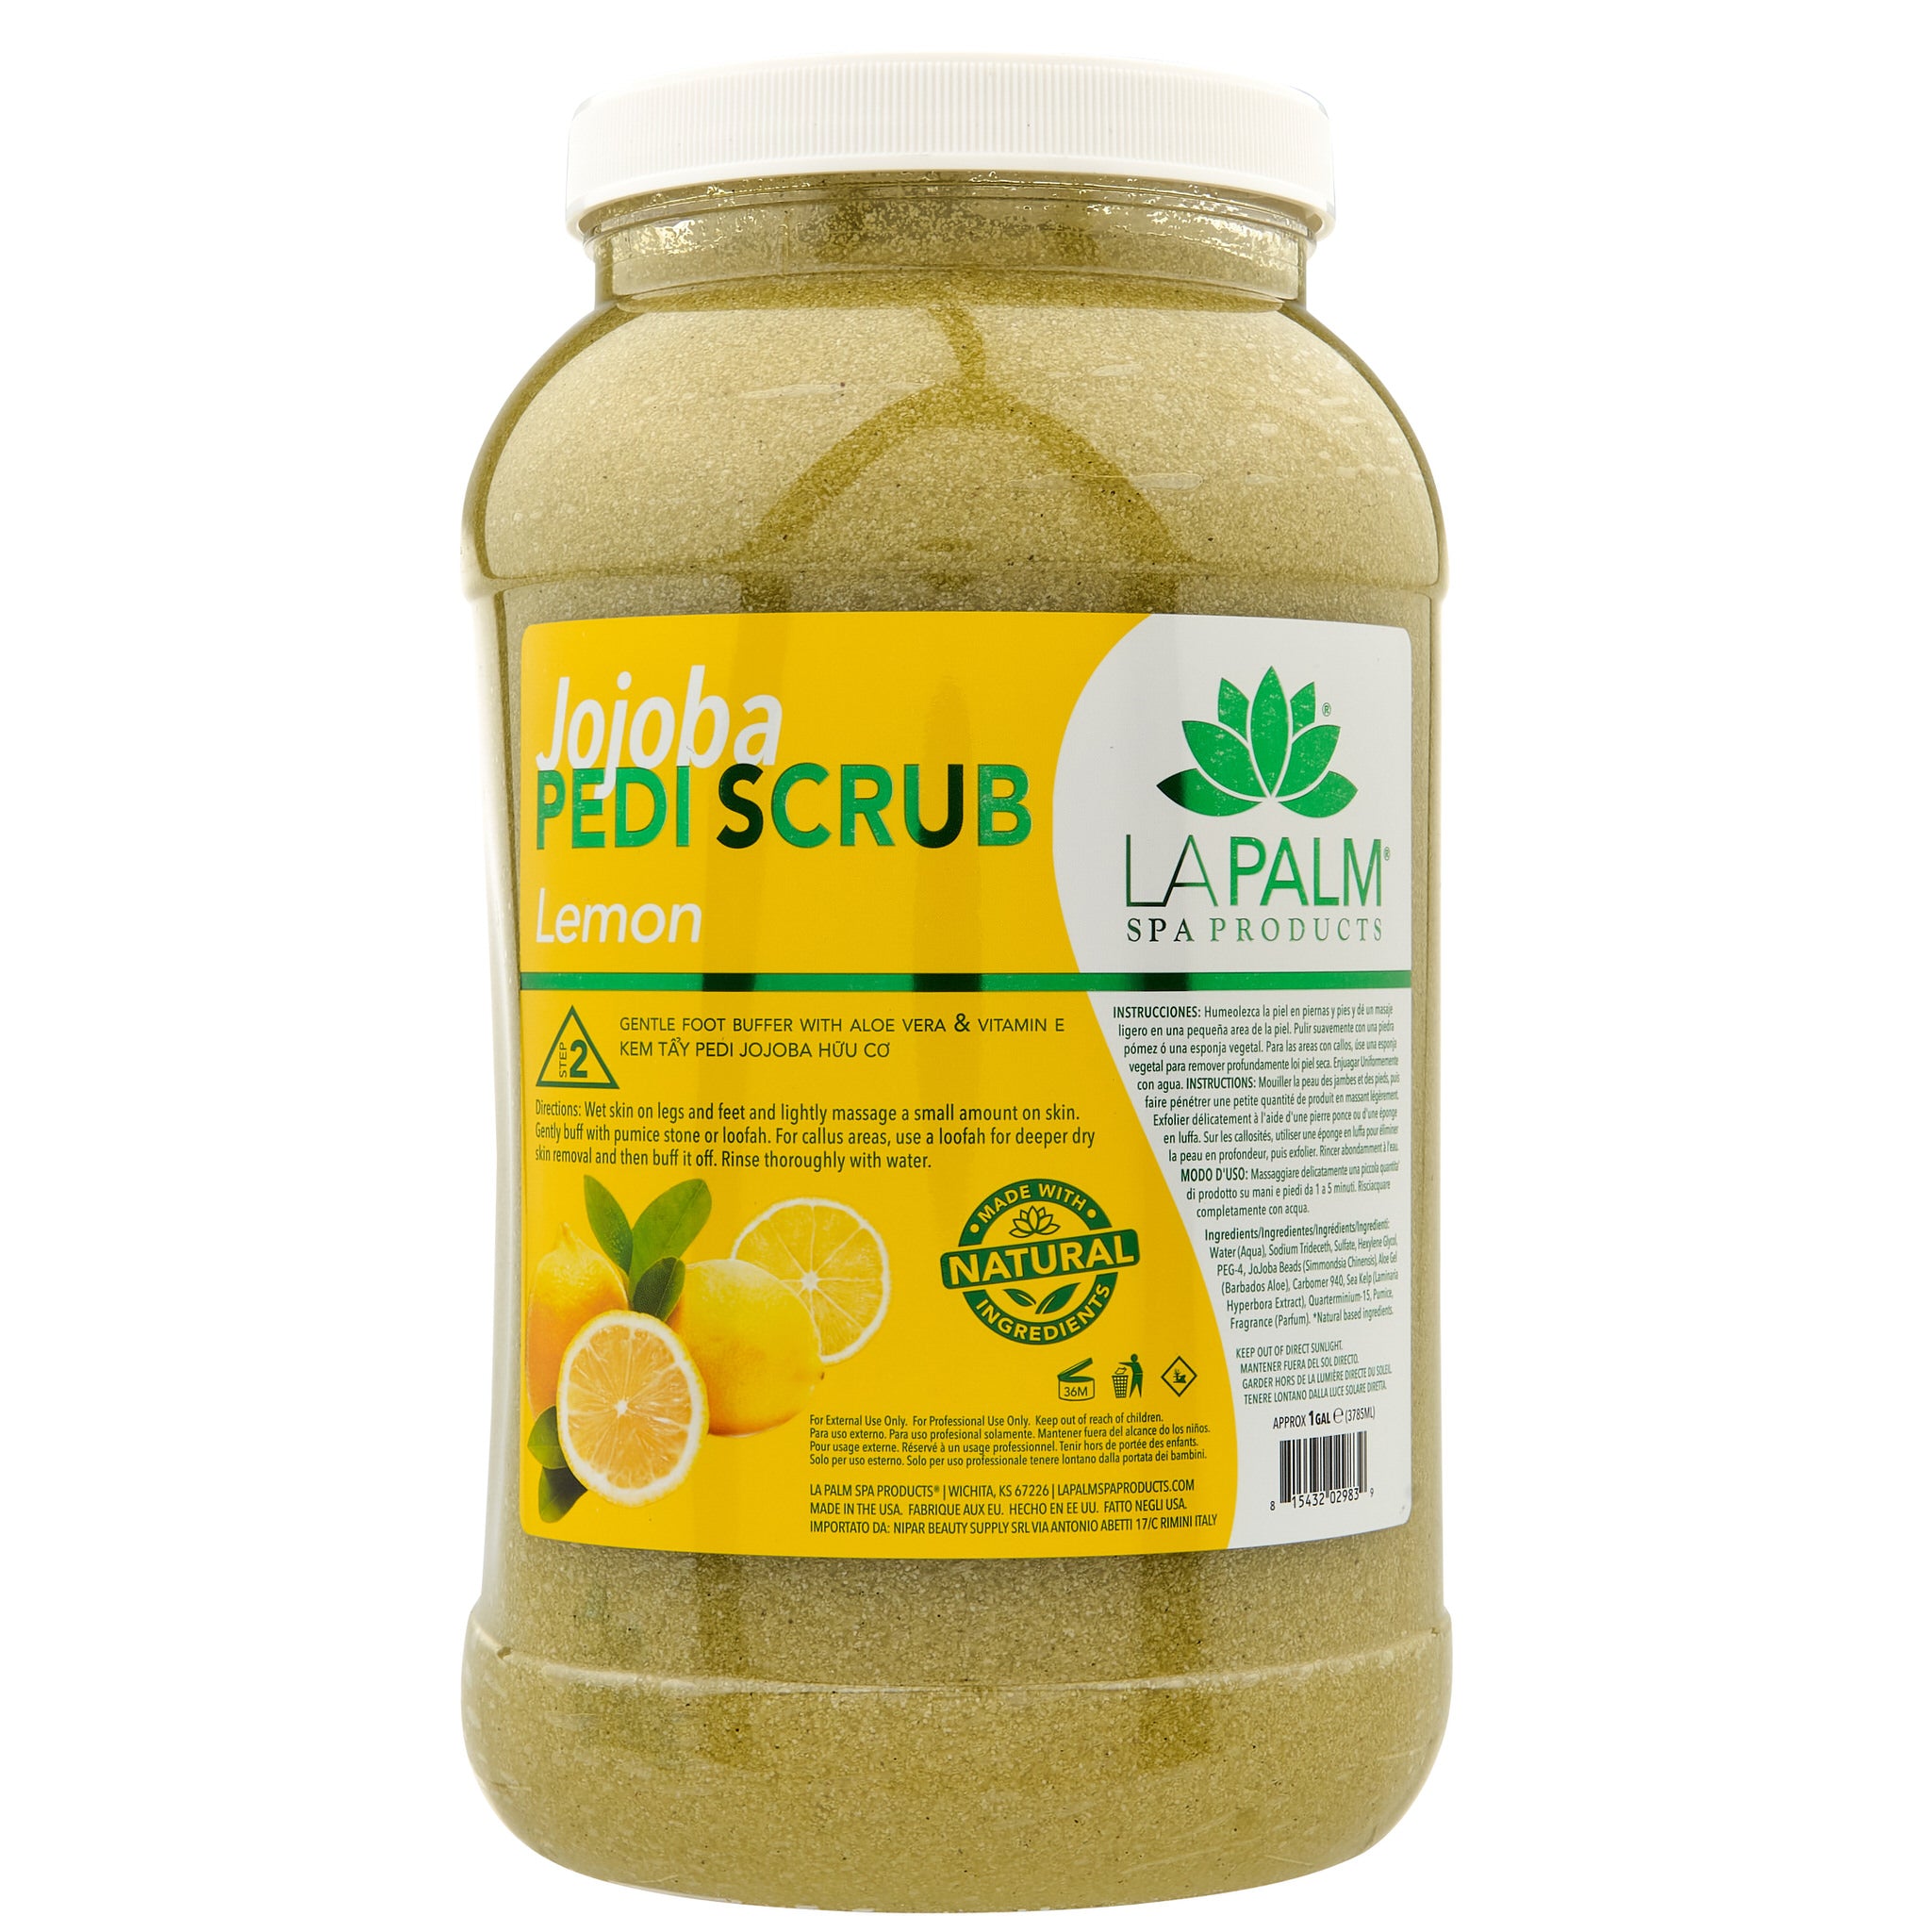 La Palm - Jojoba Pedi-Gel Scrub | Lemon - Gallon